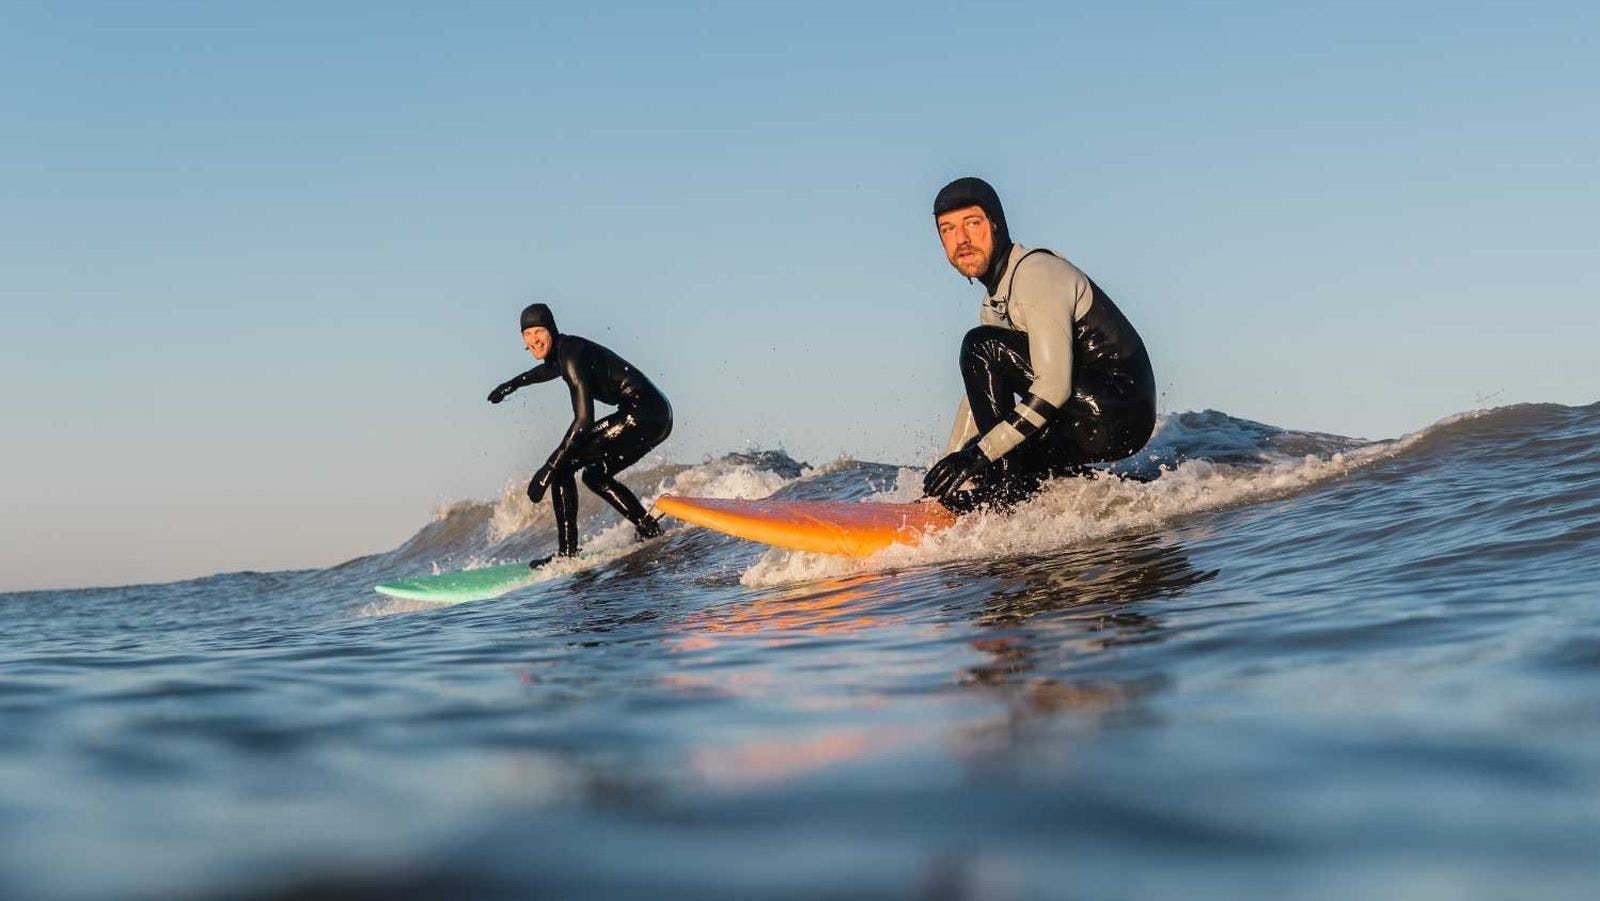 Leren surfen: wetsuits